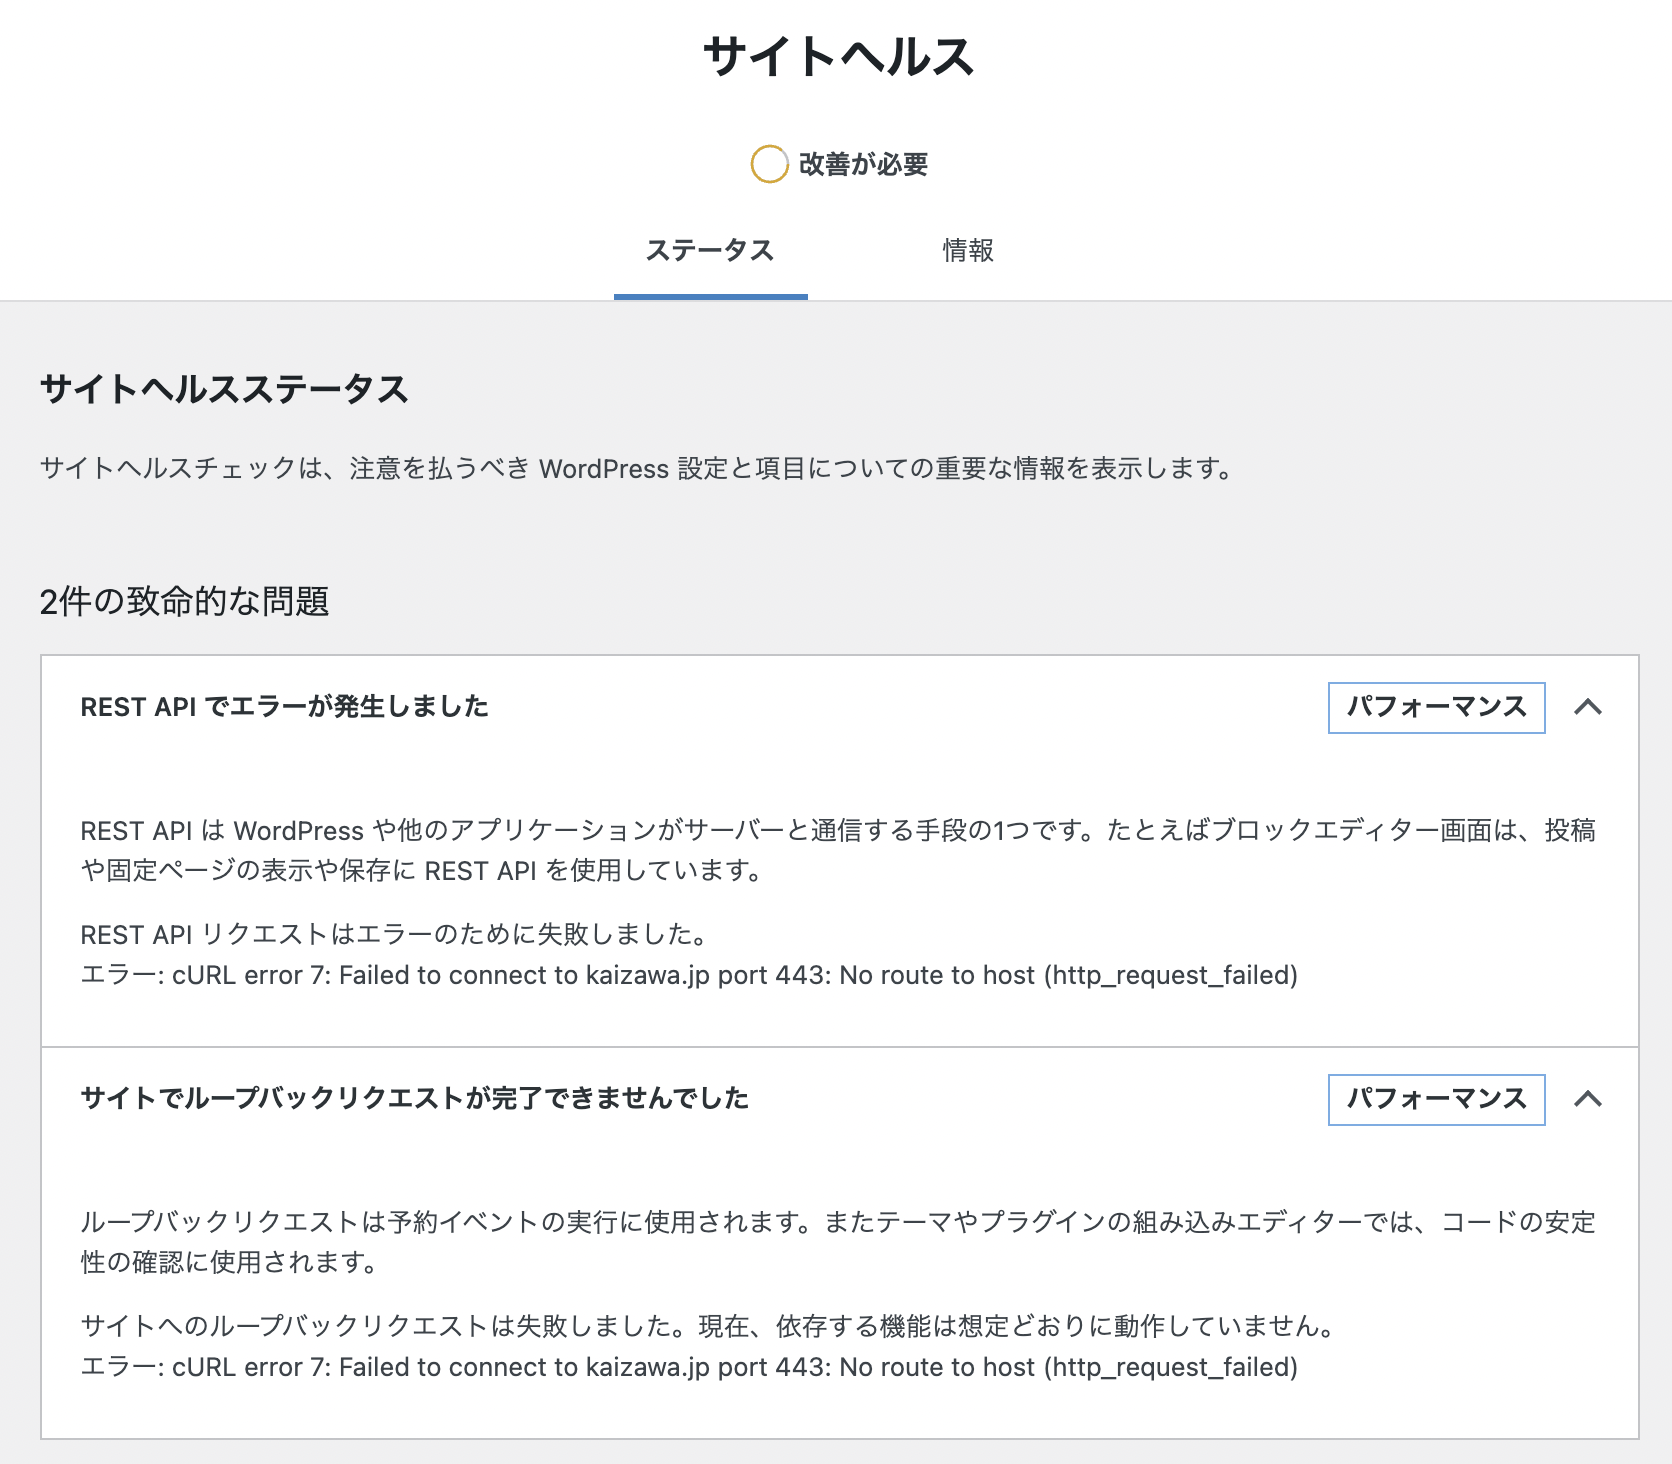 kaizawa.jp のサイトヘルス不合格問題 (REST API/ ループバックリクエスト /imagick 不足 )